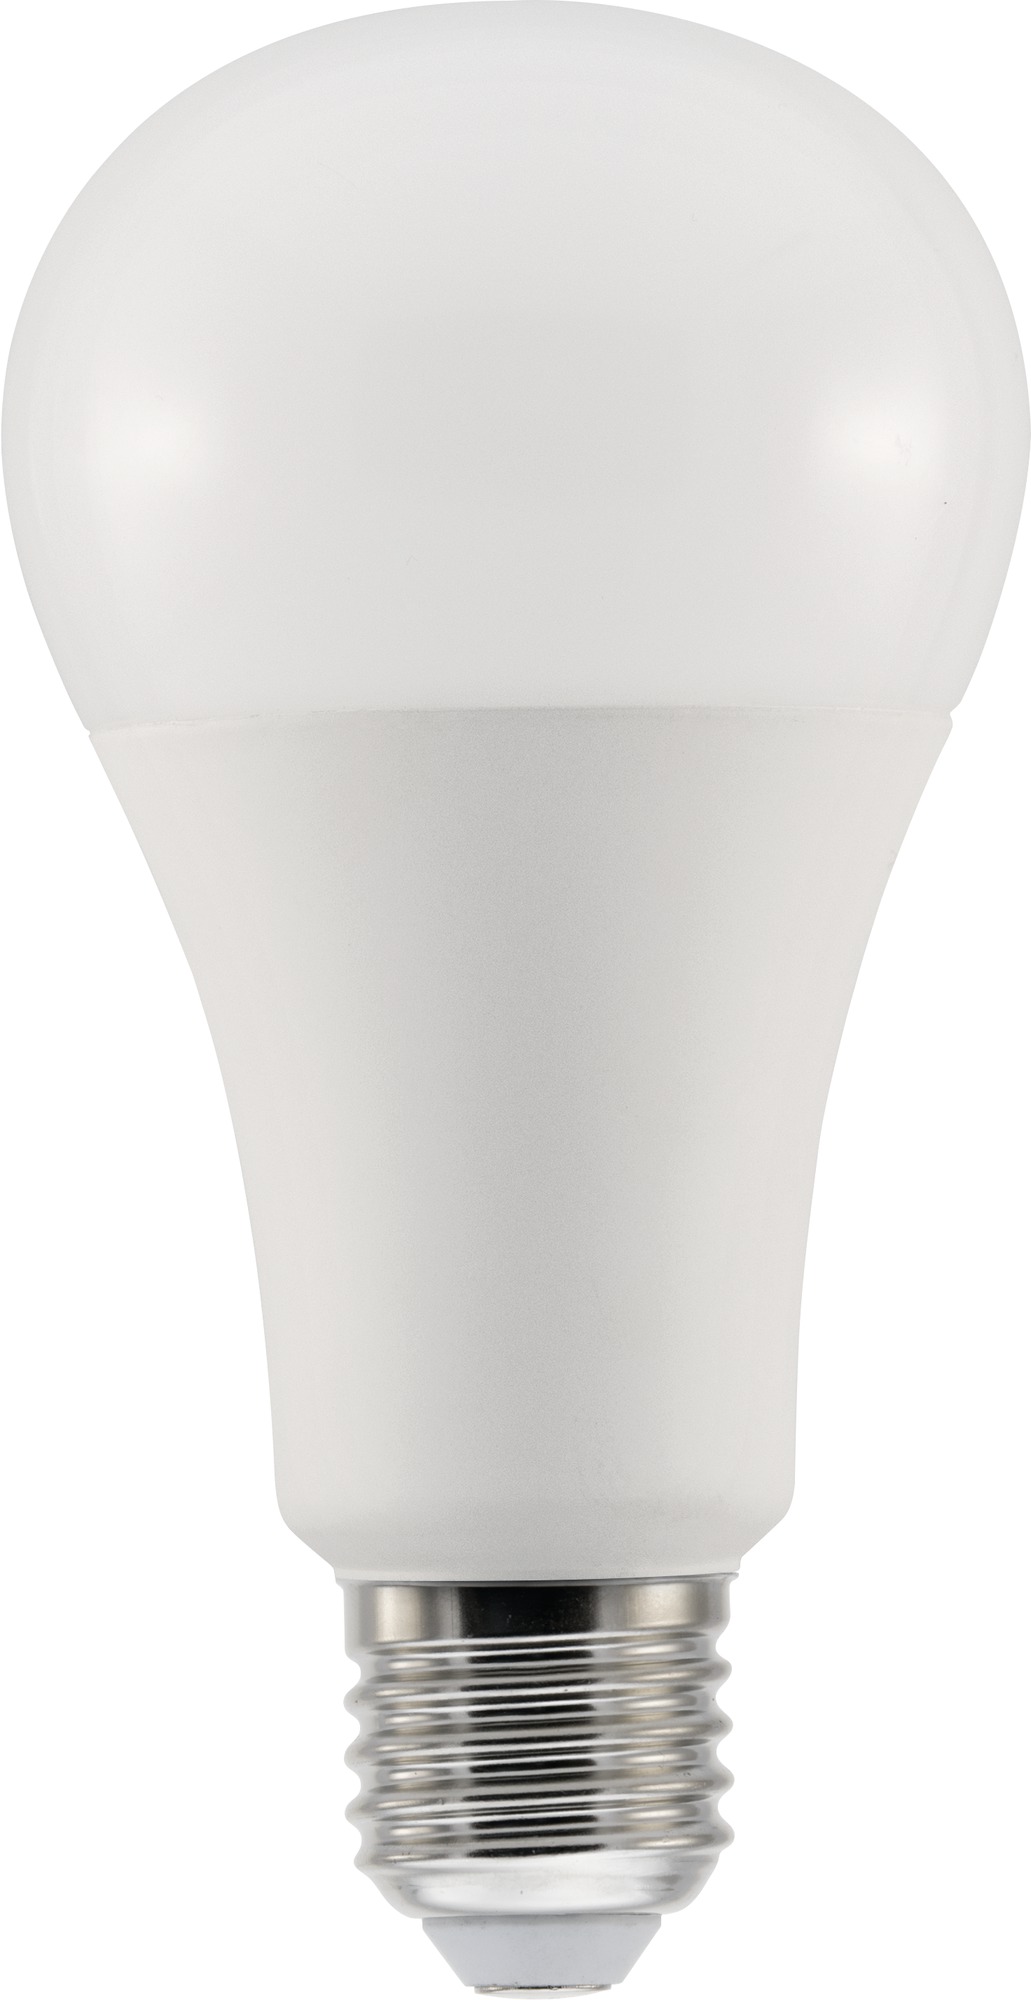 Ampoule LED OMNI GLS - Tungsram - 7 W - 470 lm - 2700 K - E27 